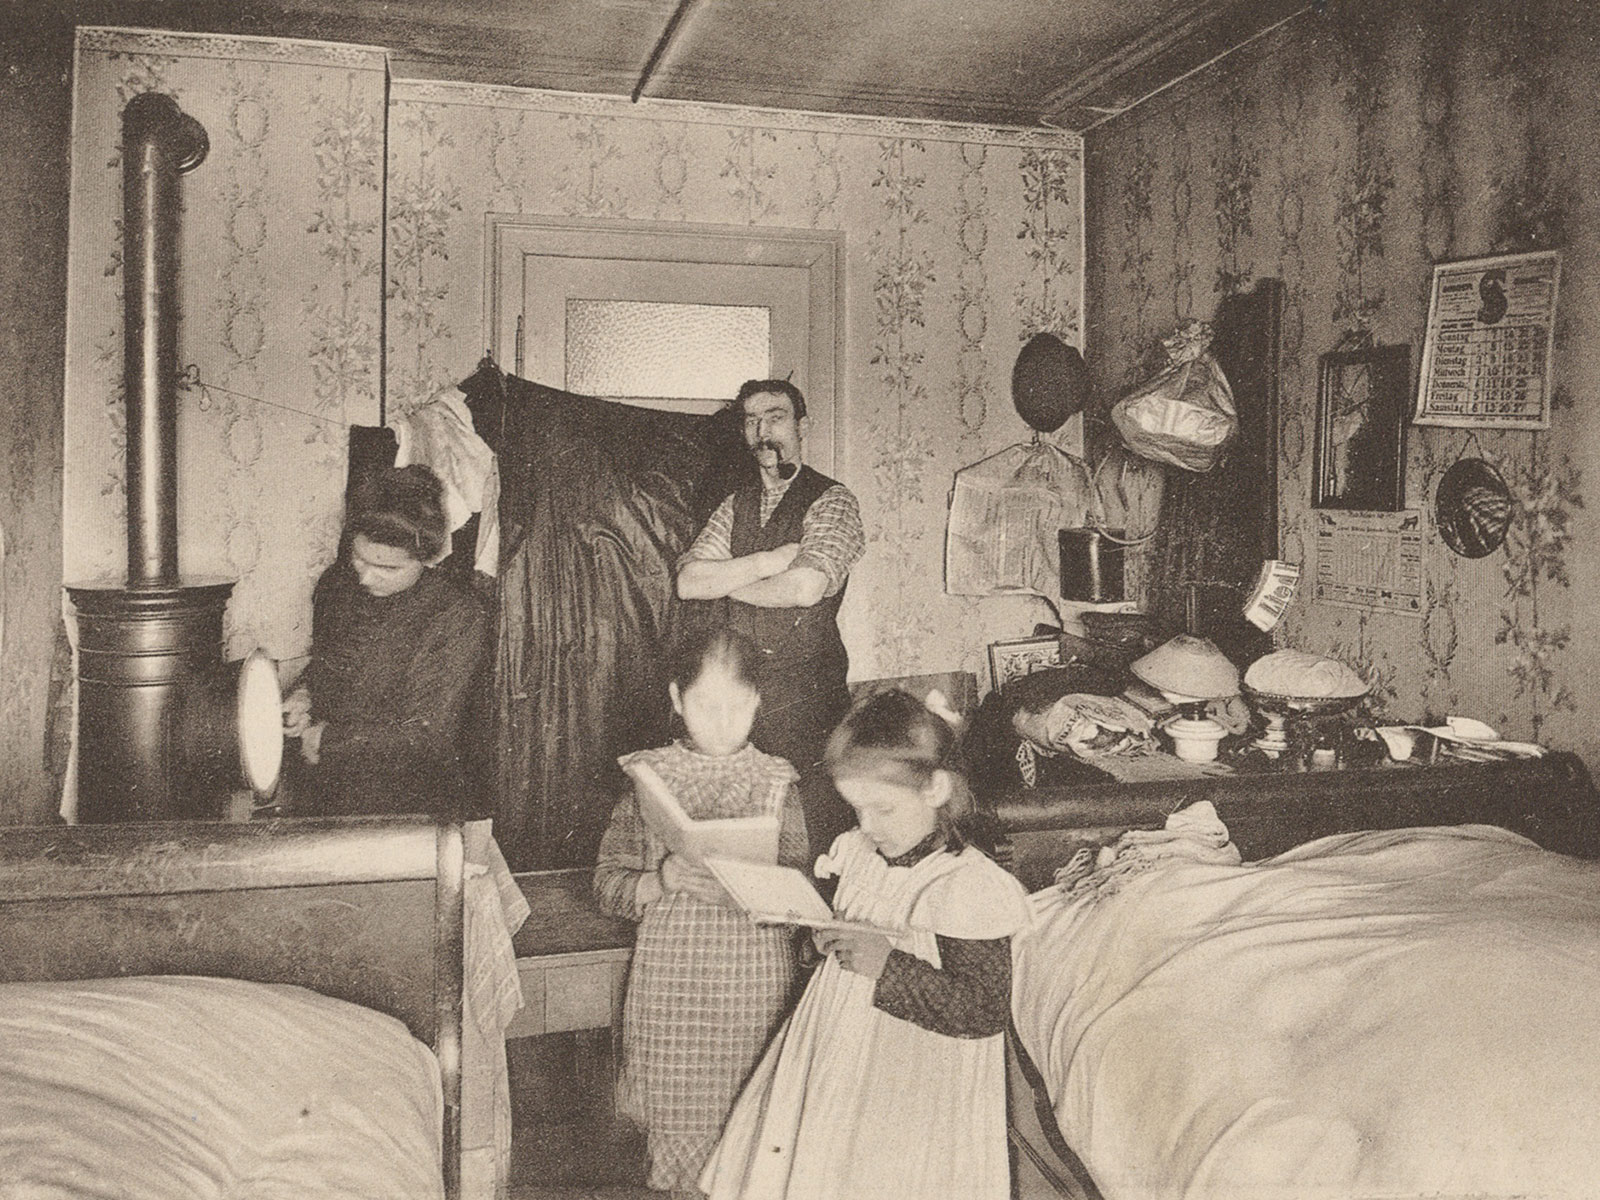 这家人靠在苏黎世给富人帮佣为生。他们的居住空间逼仄，一间屋兼具厨房、客厅和卧室之用。此图被瑞士“居家办公”展览选中，印刷为配套明信片。图片约绘制于1900年。